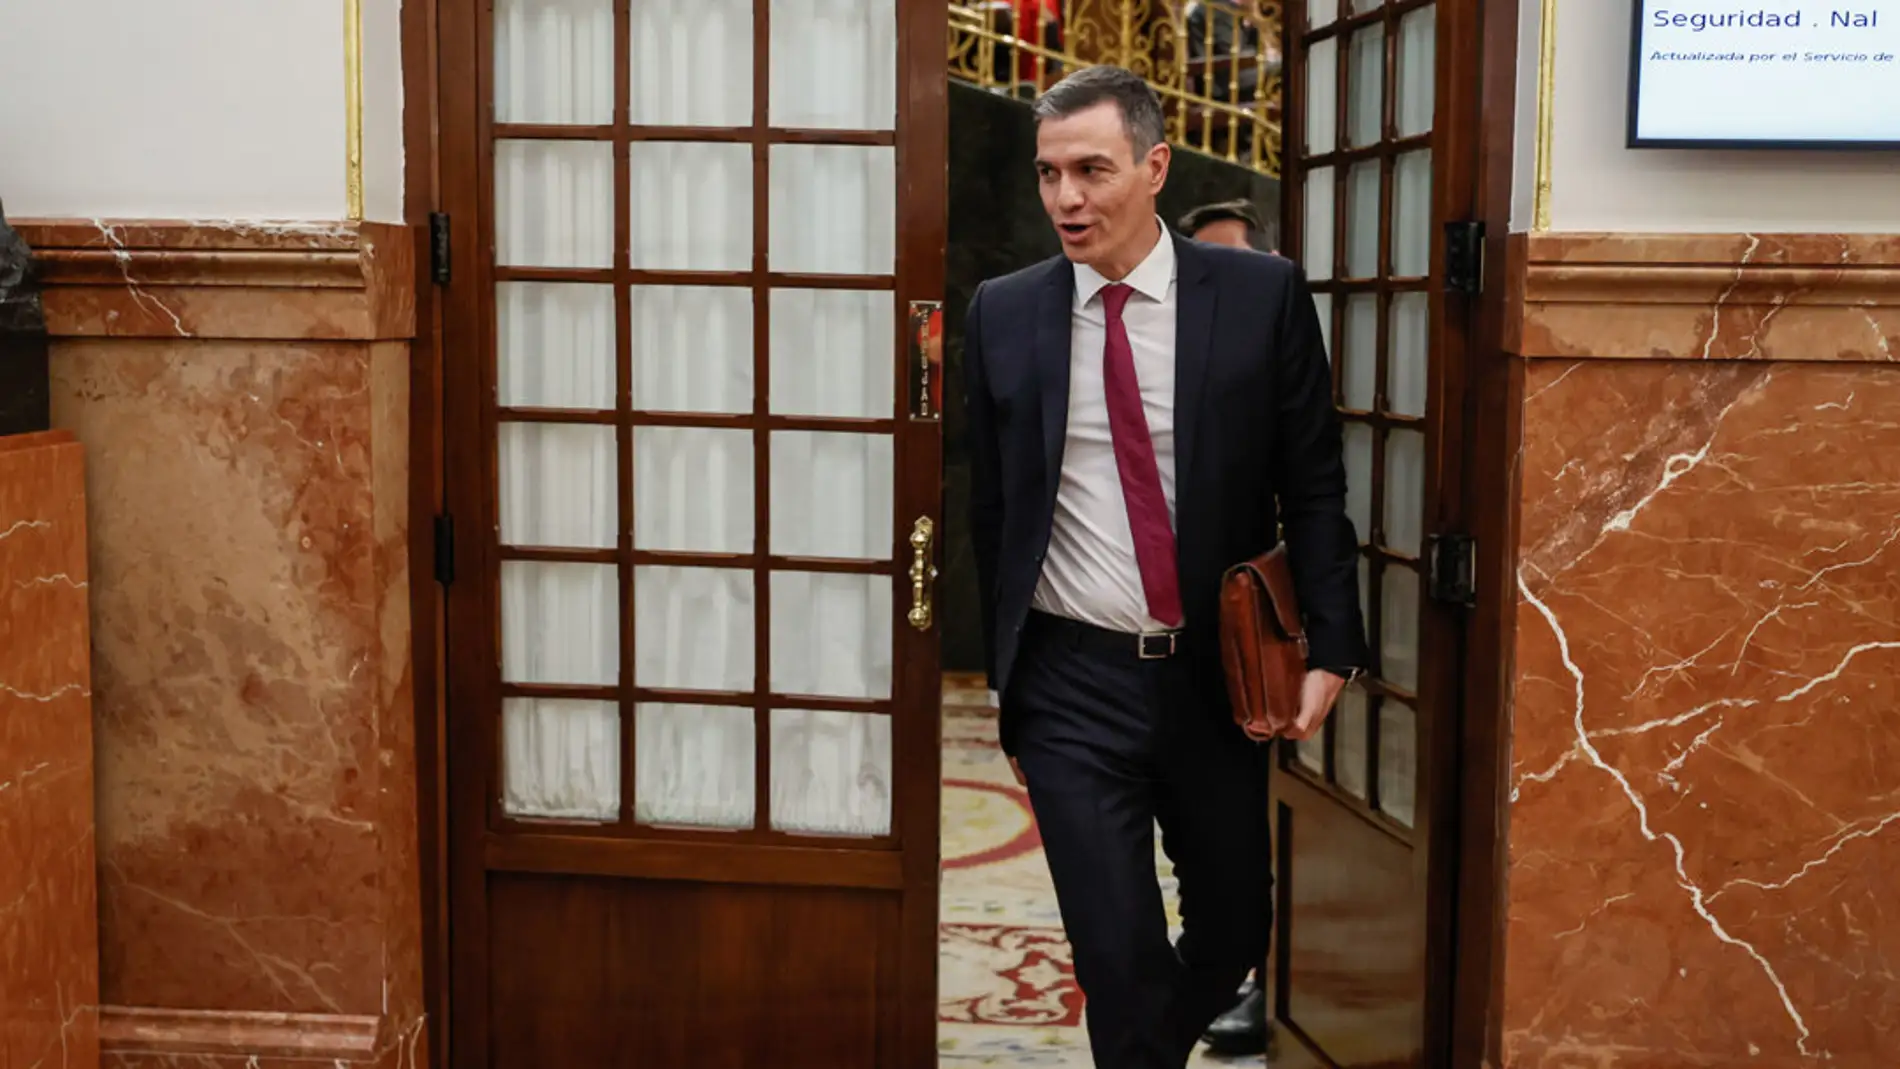 El presidente del Gobierno, Pedro Sánchez, saliendo del hemiciclo/ EFE/ Fernando Alvarado